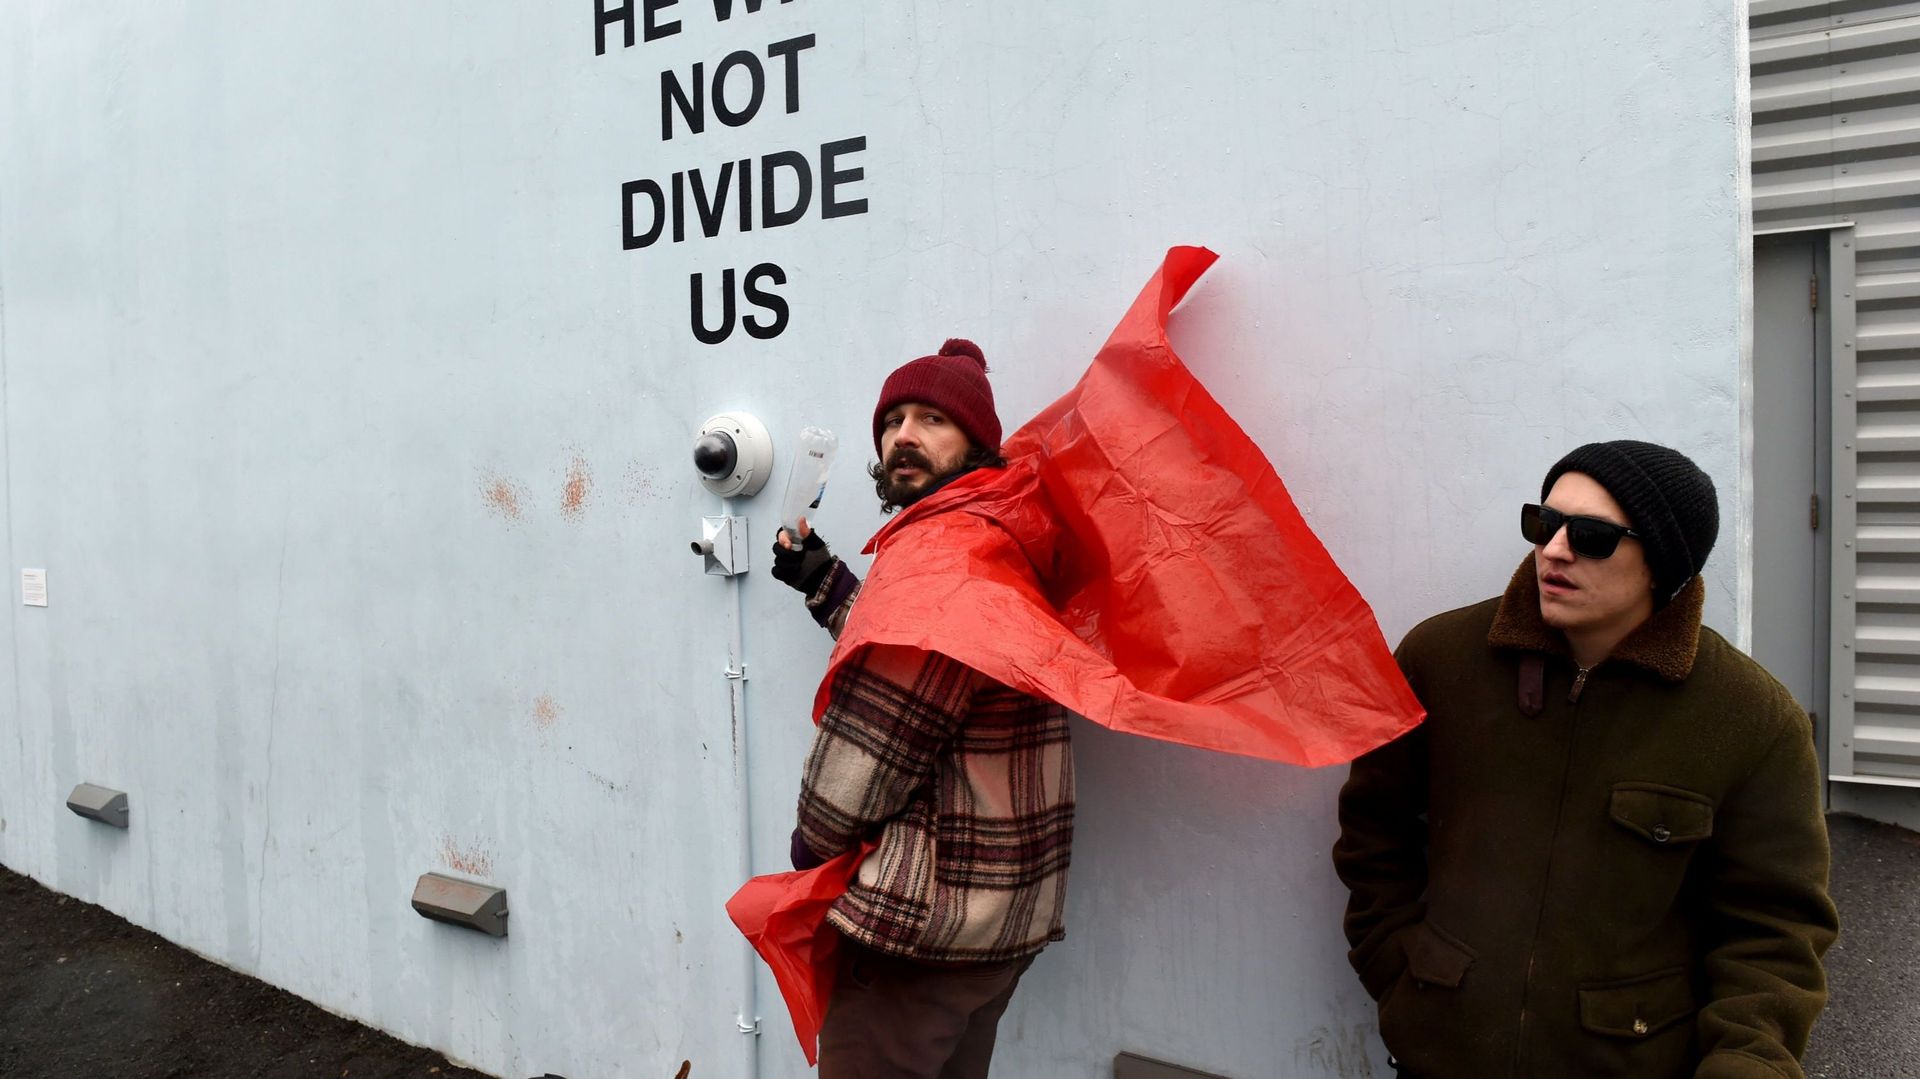 Le "happening" de Shia LaBeouf consiste en une caméra qui tourne 24h/24, fixée sur un mur. Les passants qui le souhaitent sont invités à se mettre devant l'objectif pour déclamer la phrase proposée par l'acteur: "He will not divide us"